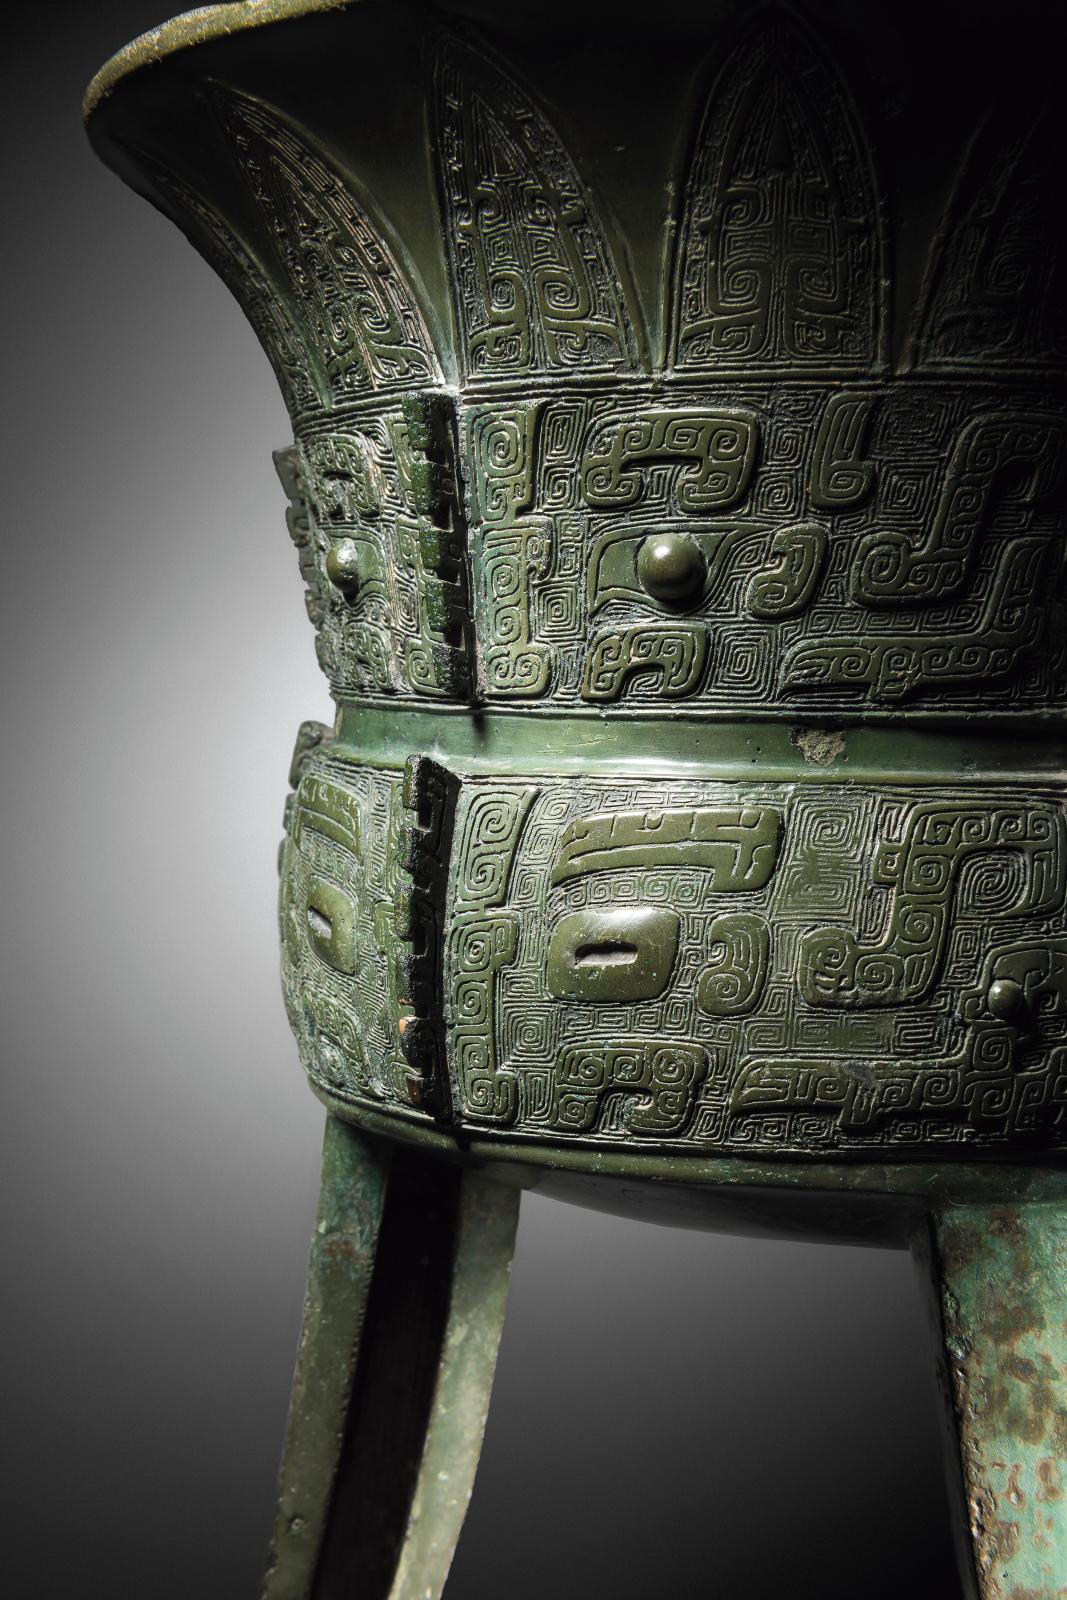 Chine, dynastie Shang, période d’Anyang, XIVe-XIIe siècle av. J.-C. Vase à boissons fermentées de forme jia, bronze, h. 47,5 cm. Galerie C